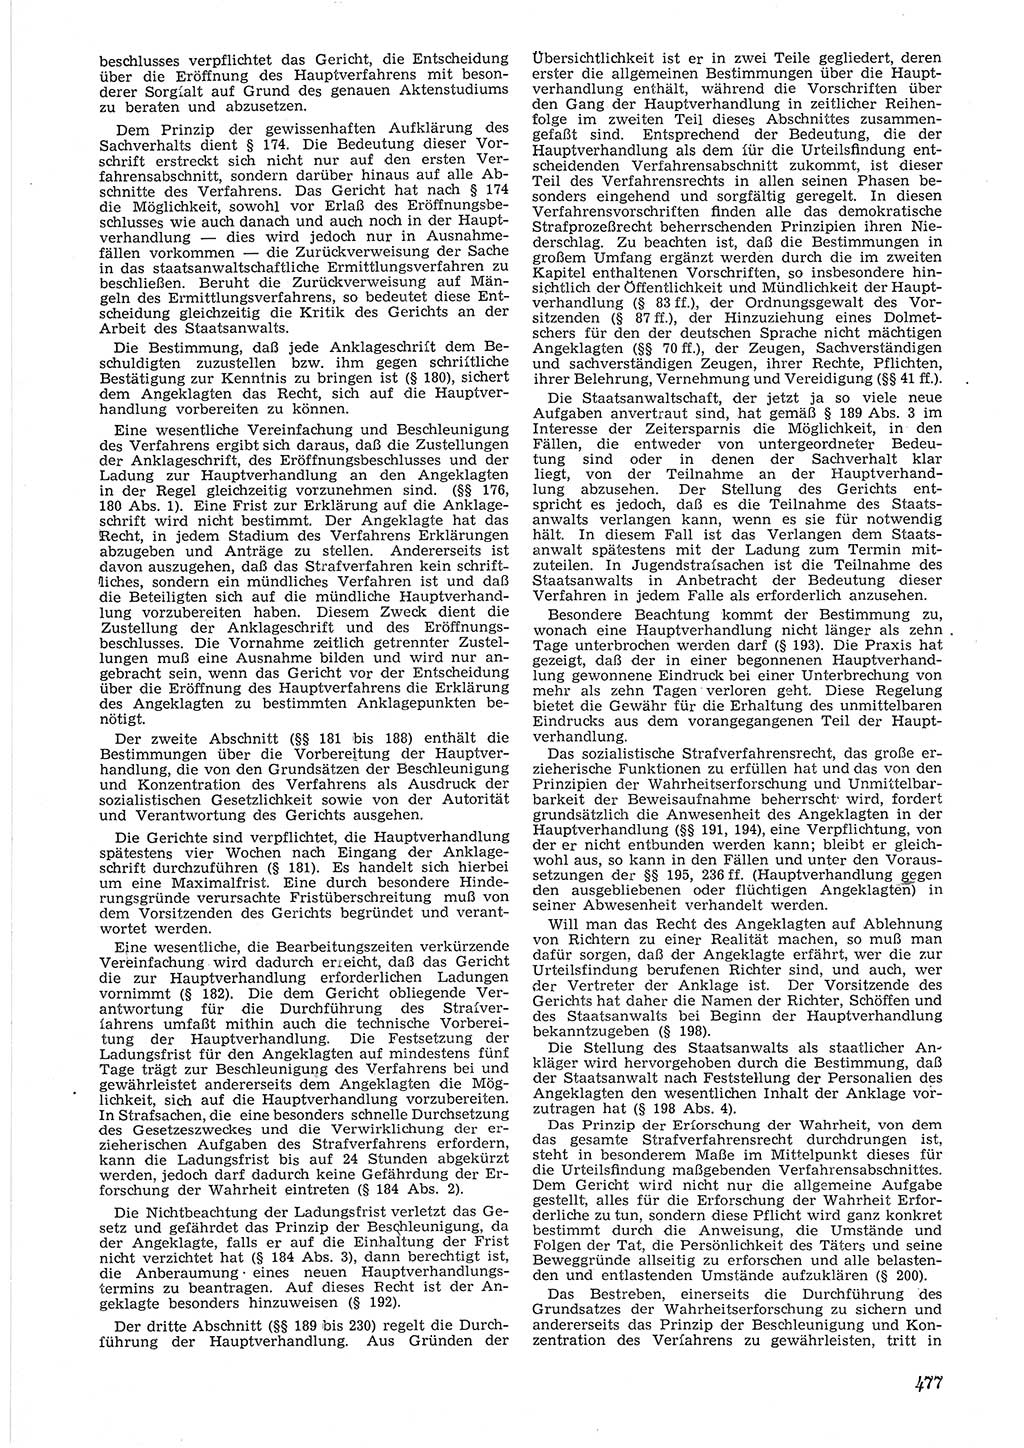 Neue Justiz (NJ), Zeitschrift für Recht und Rechtswissenschaft [Deutsche Demokratische Republik (DDR)], 6. Jahrgang 1952, Seite 477 (NJ DDR 1952, S. 477)